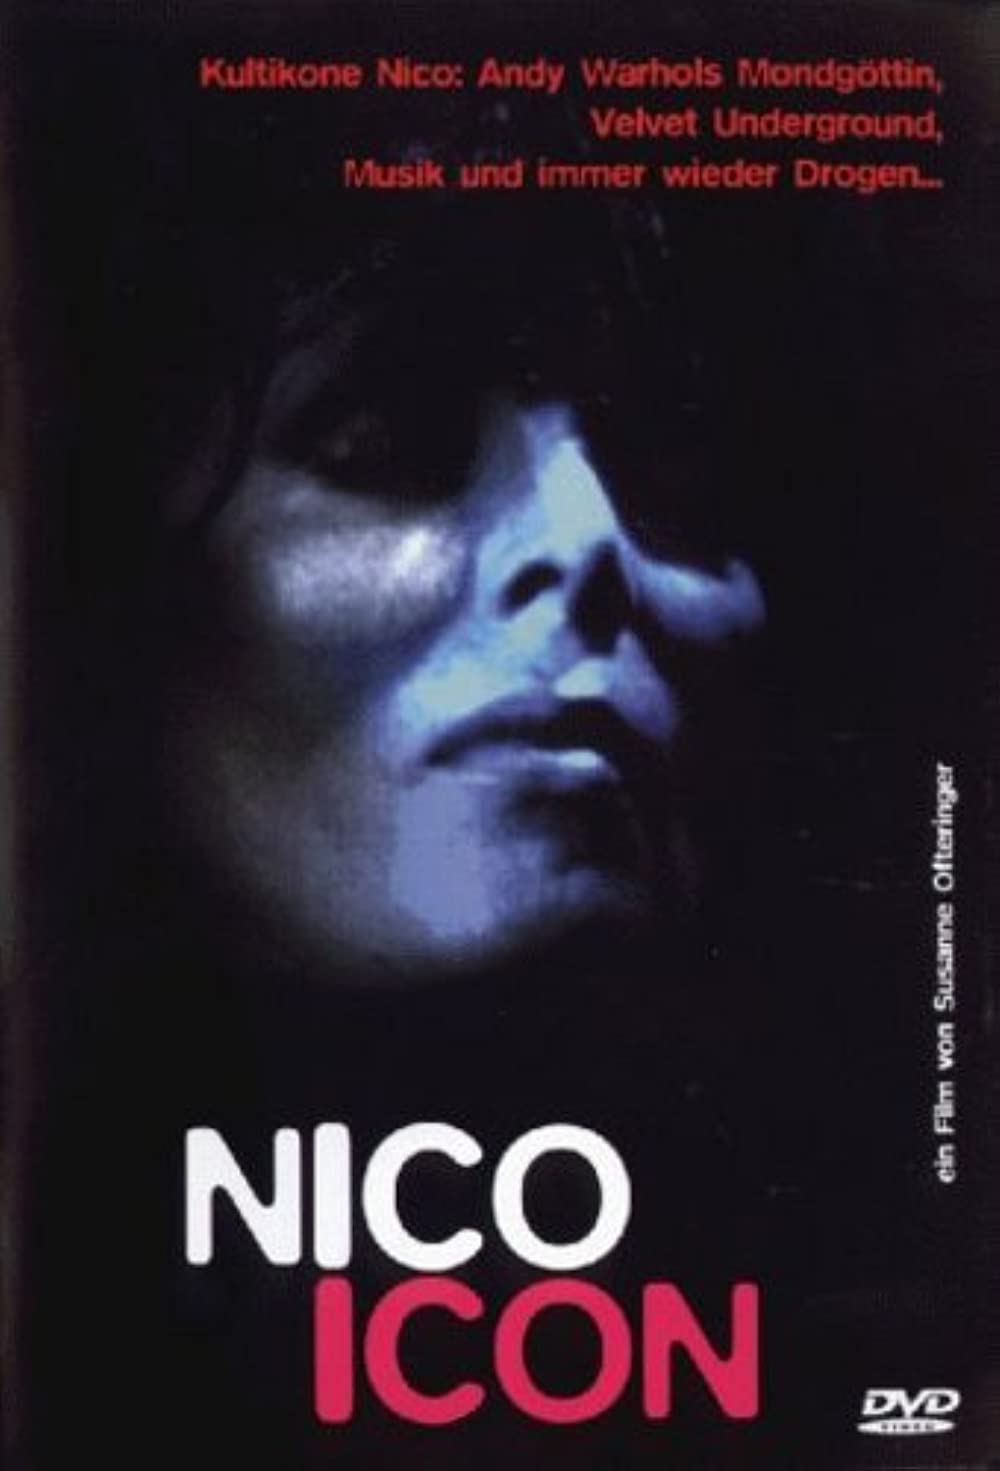 Filmbeschreibung zu Nico Icon (OV)